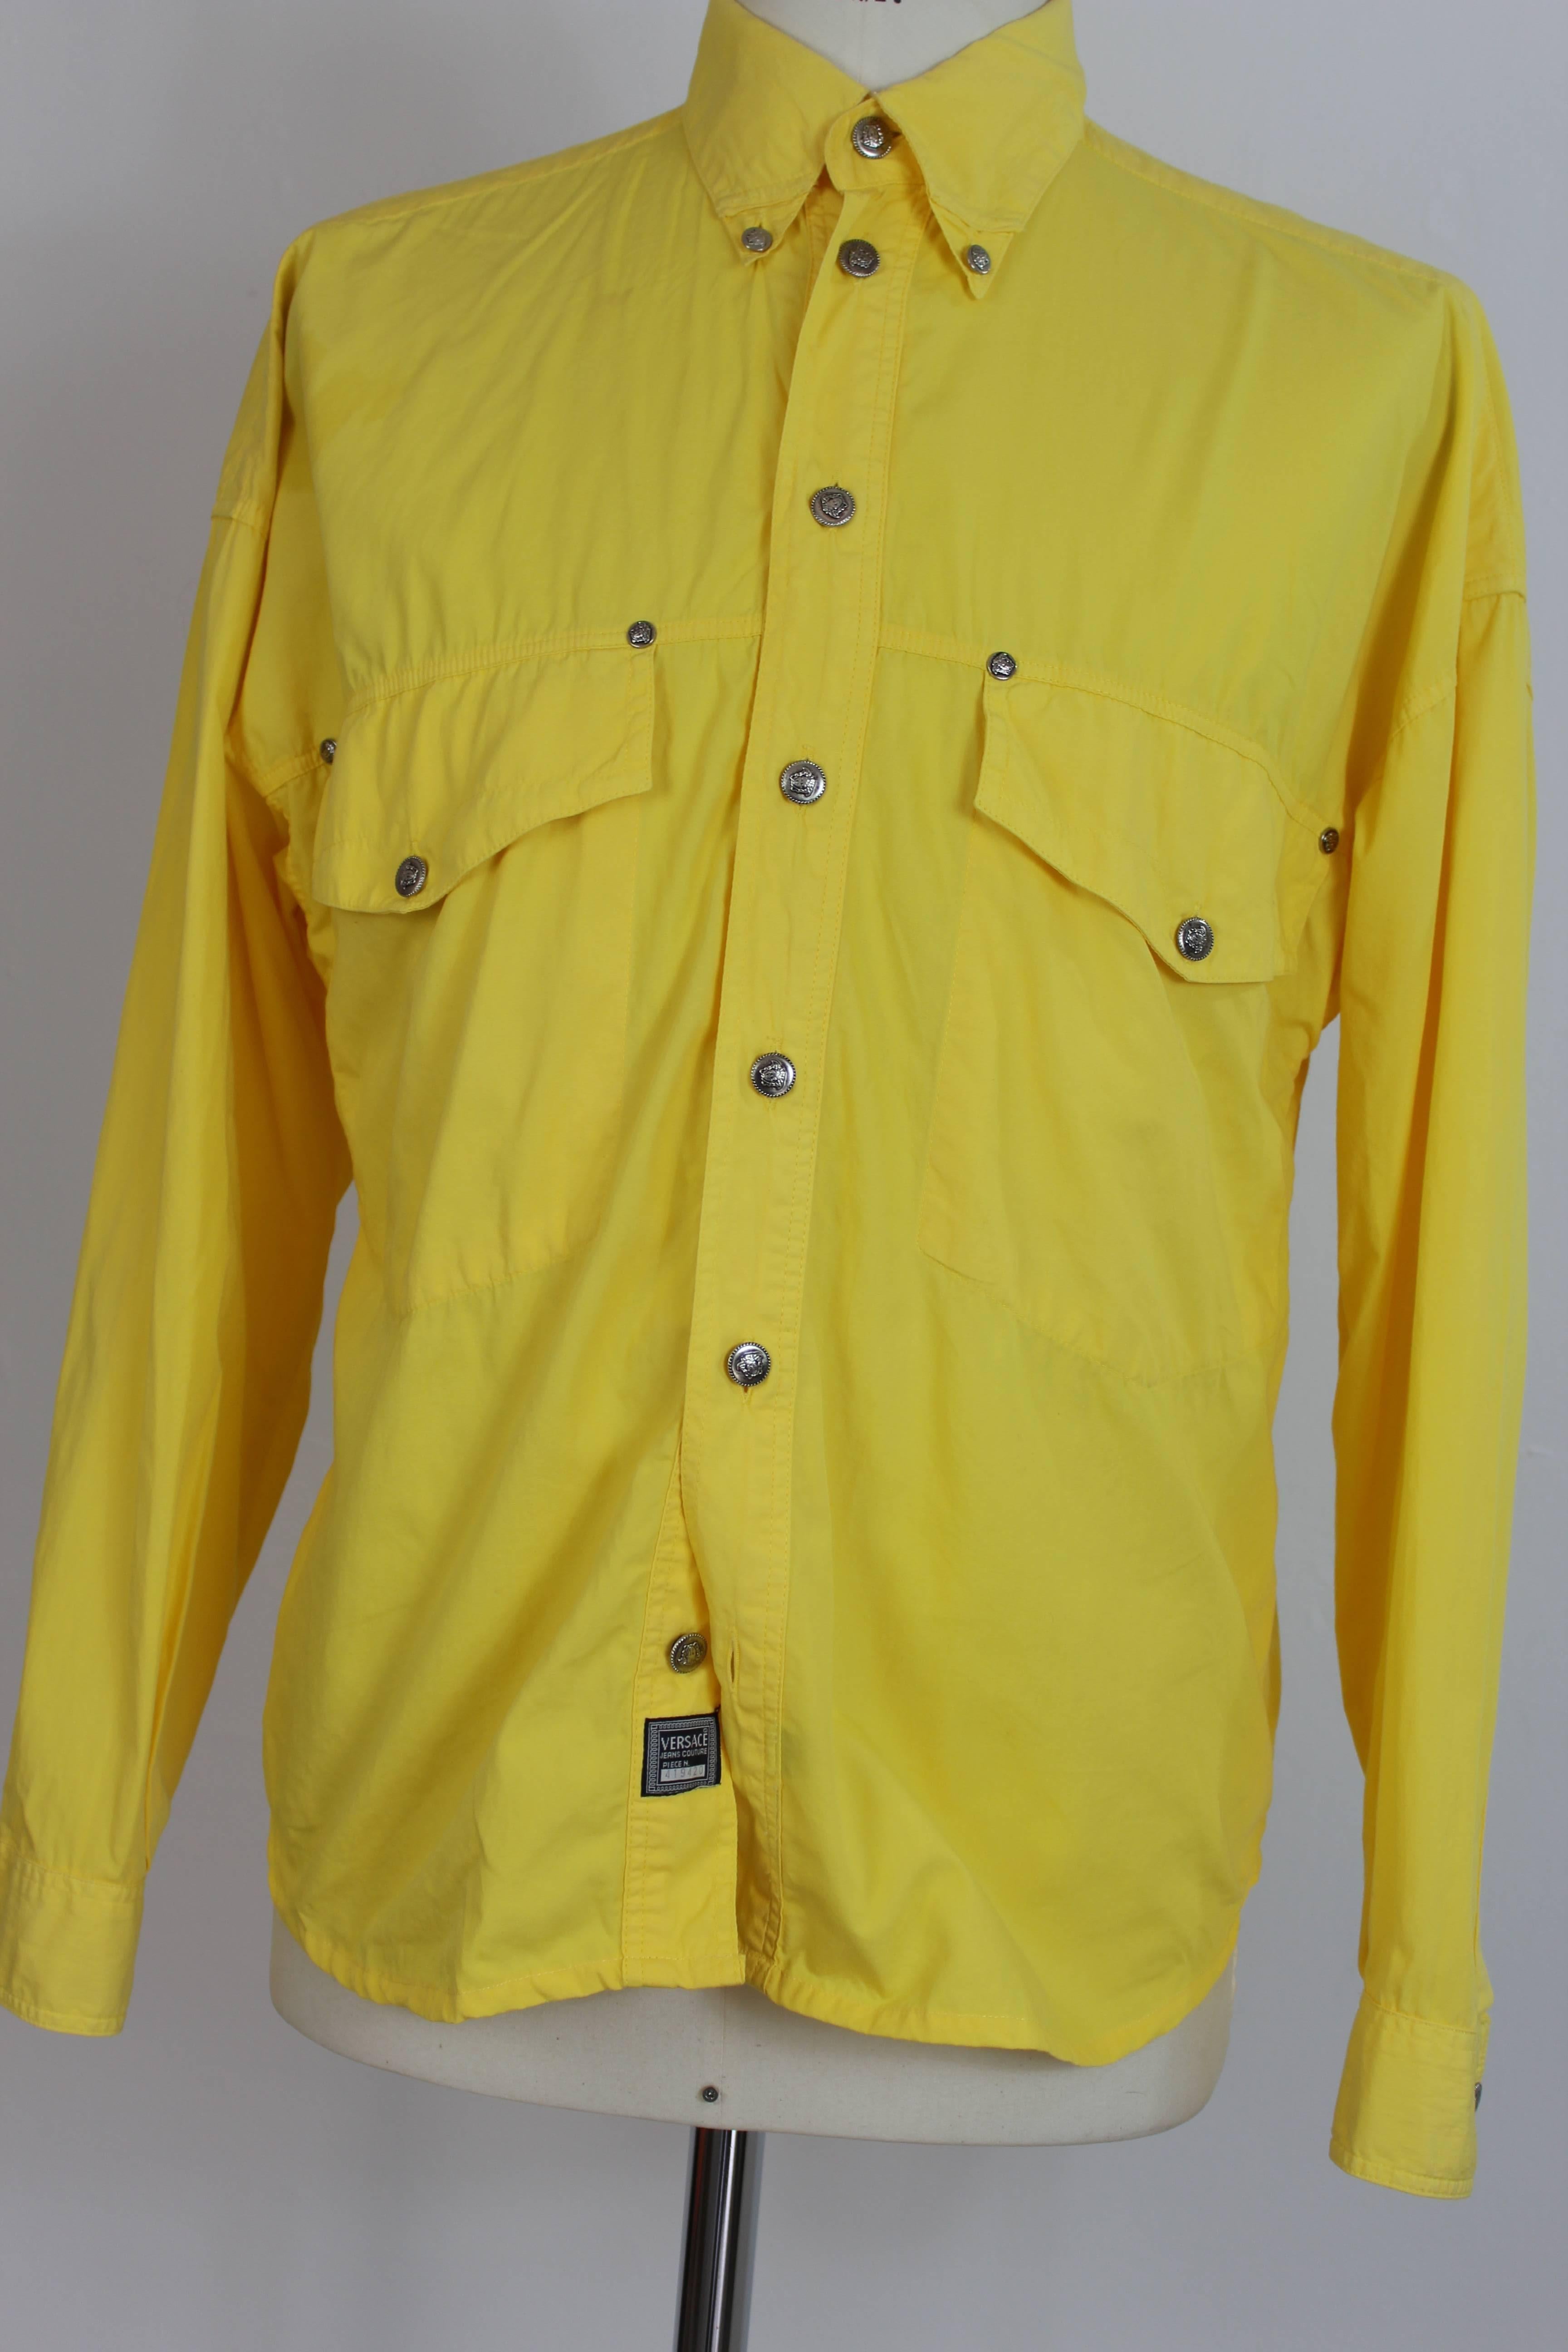 Gianni Versace Couture Cowboy Yellow  Italian Shirt, 1990 3